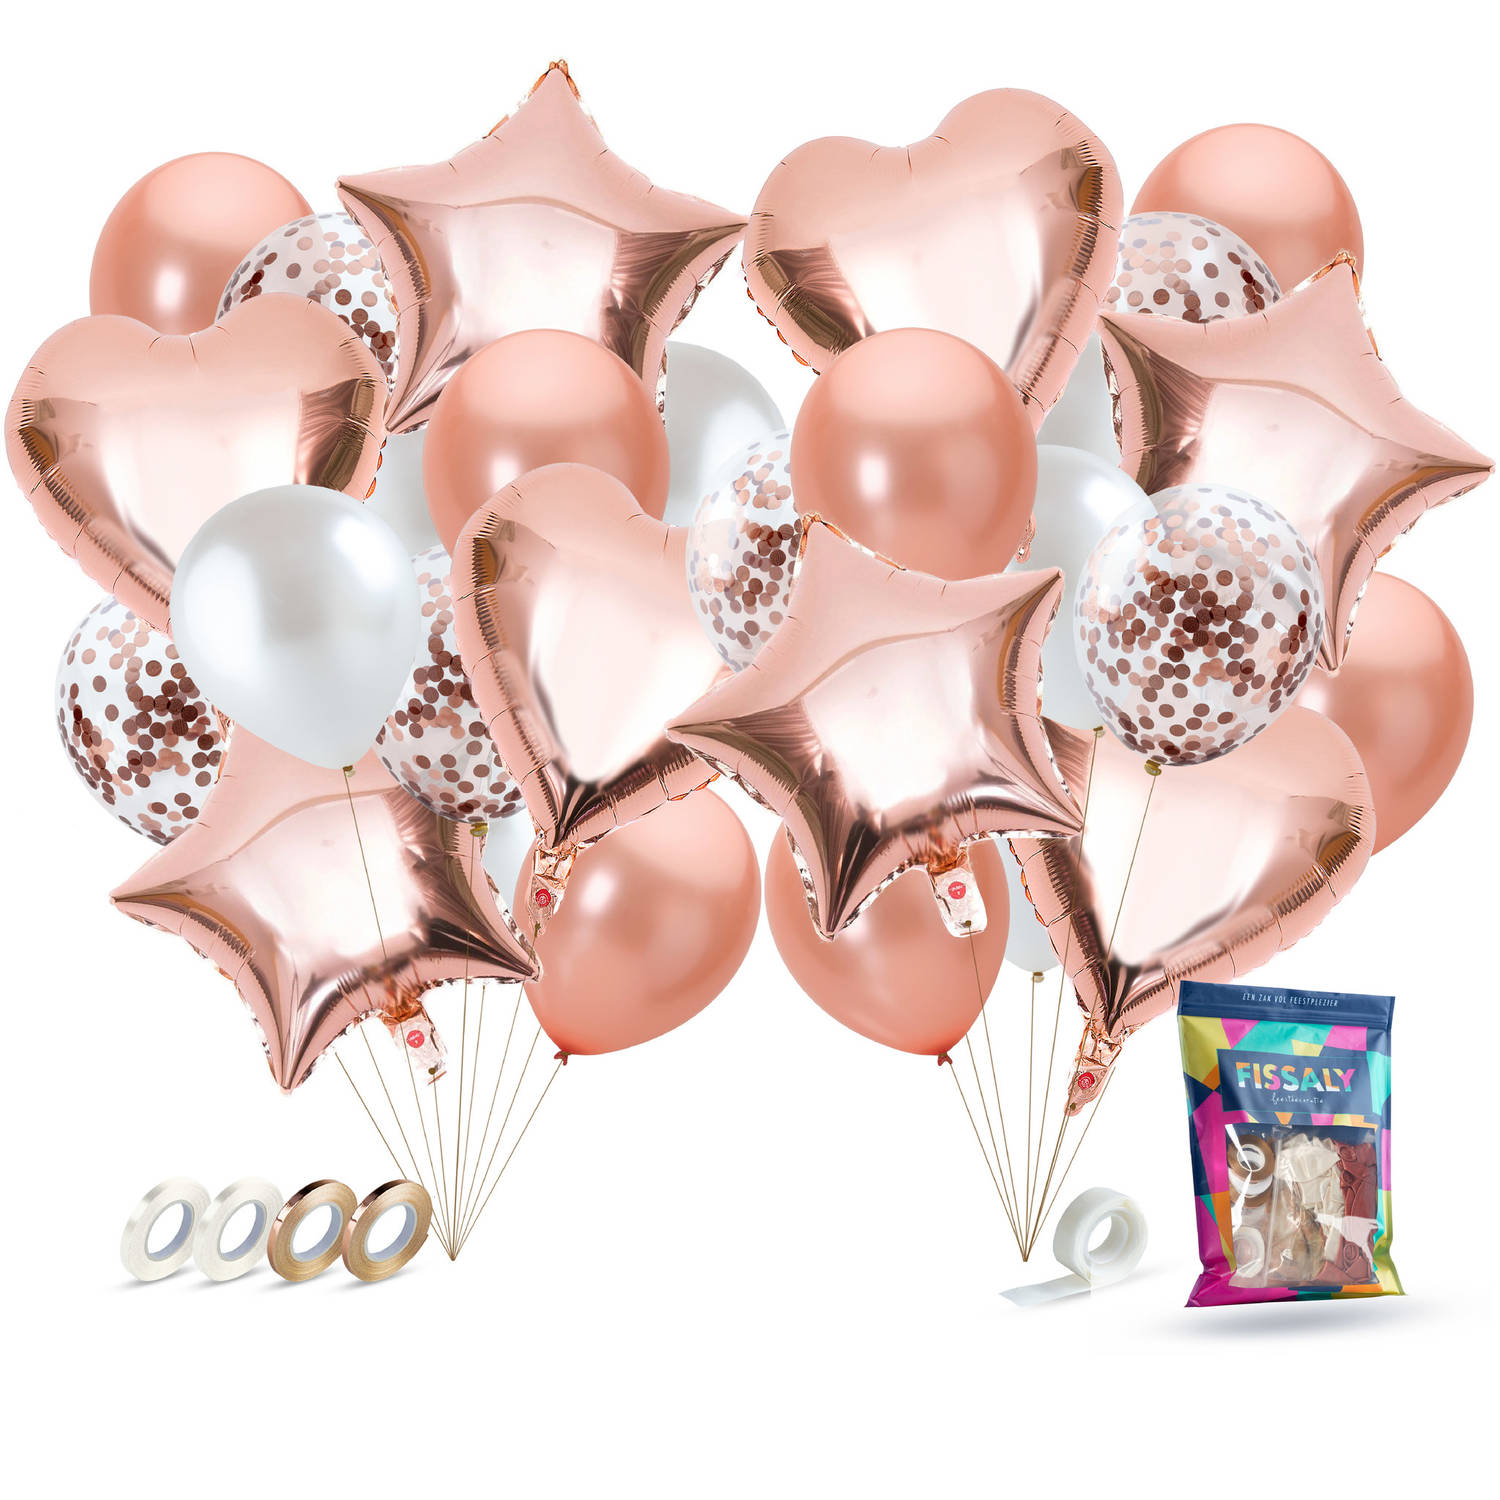 Fissaly® 40 Stuks Rose Goud Helium Ballonnen met Lint - Verjaardag Feest Decoratie - Papieren Confetti - Roze Gold Latex